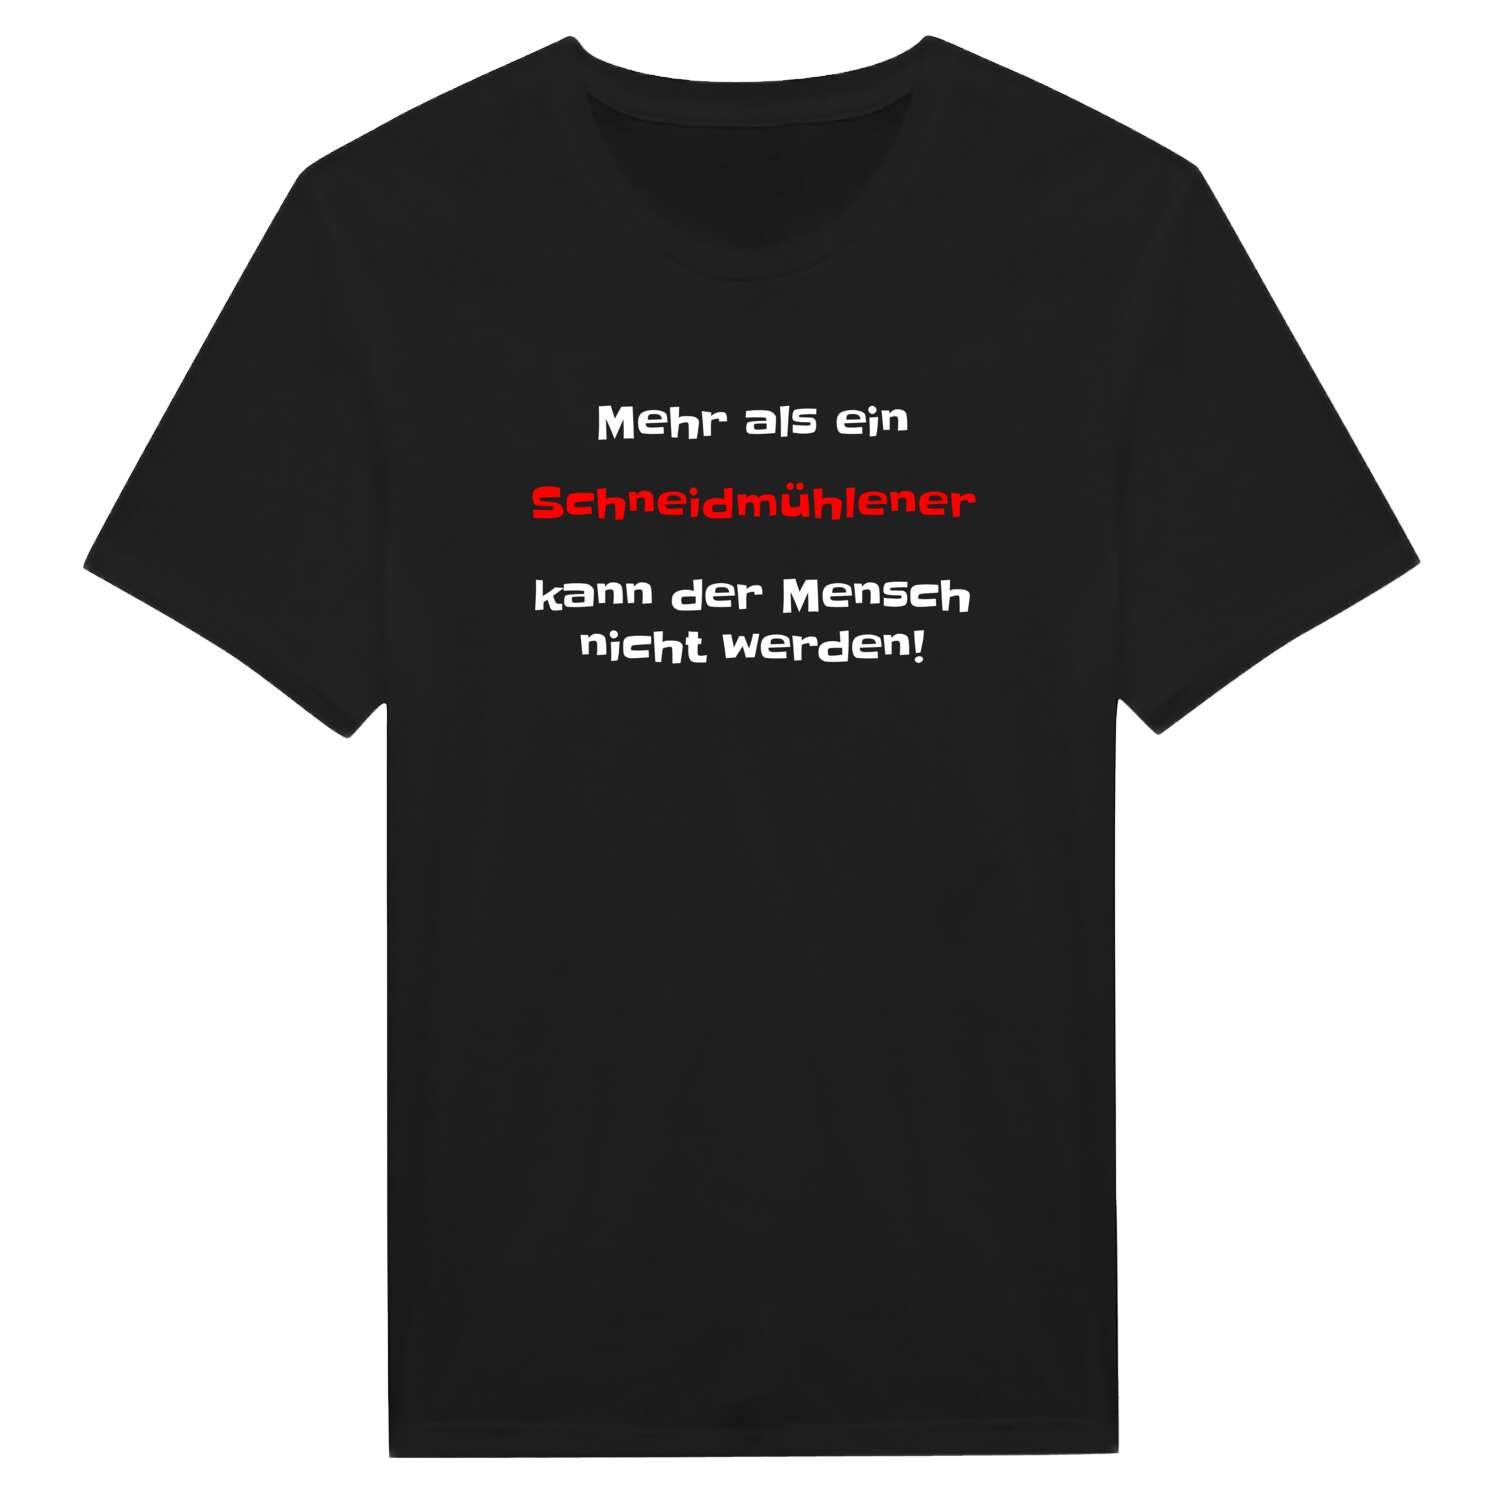 Schneidmühle T-Shirt »Mehr als ein«